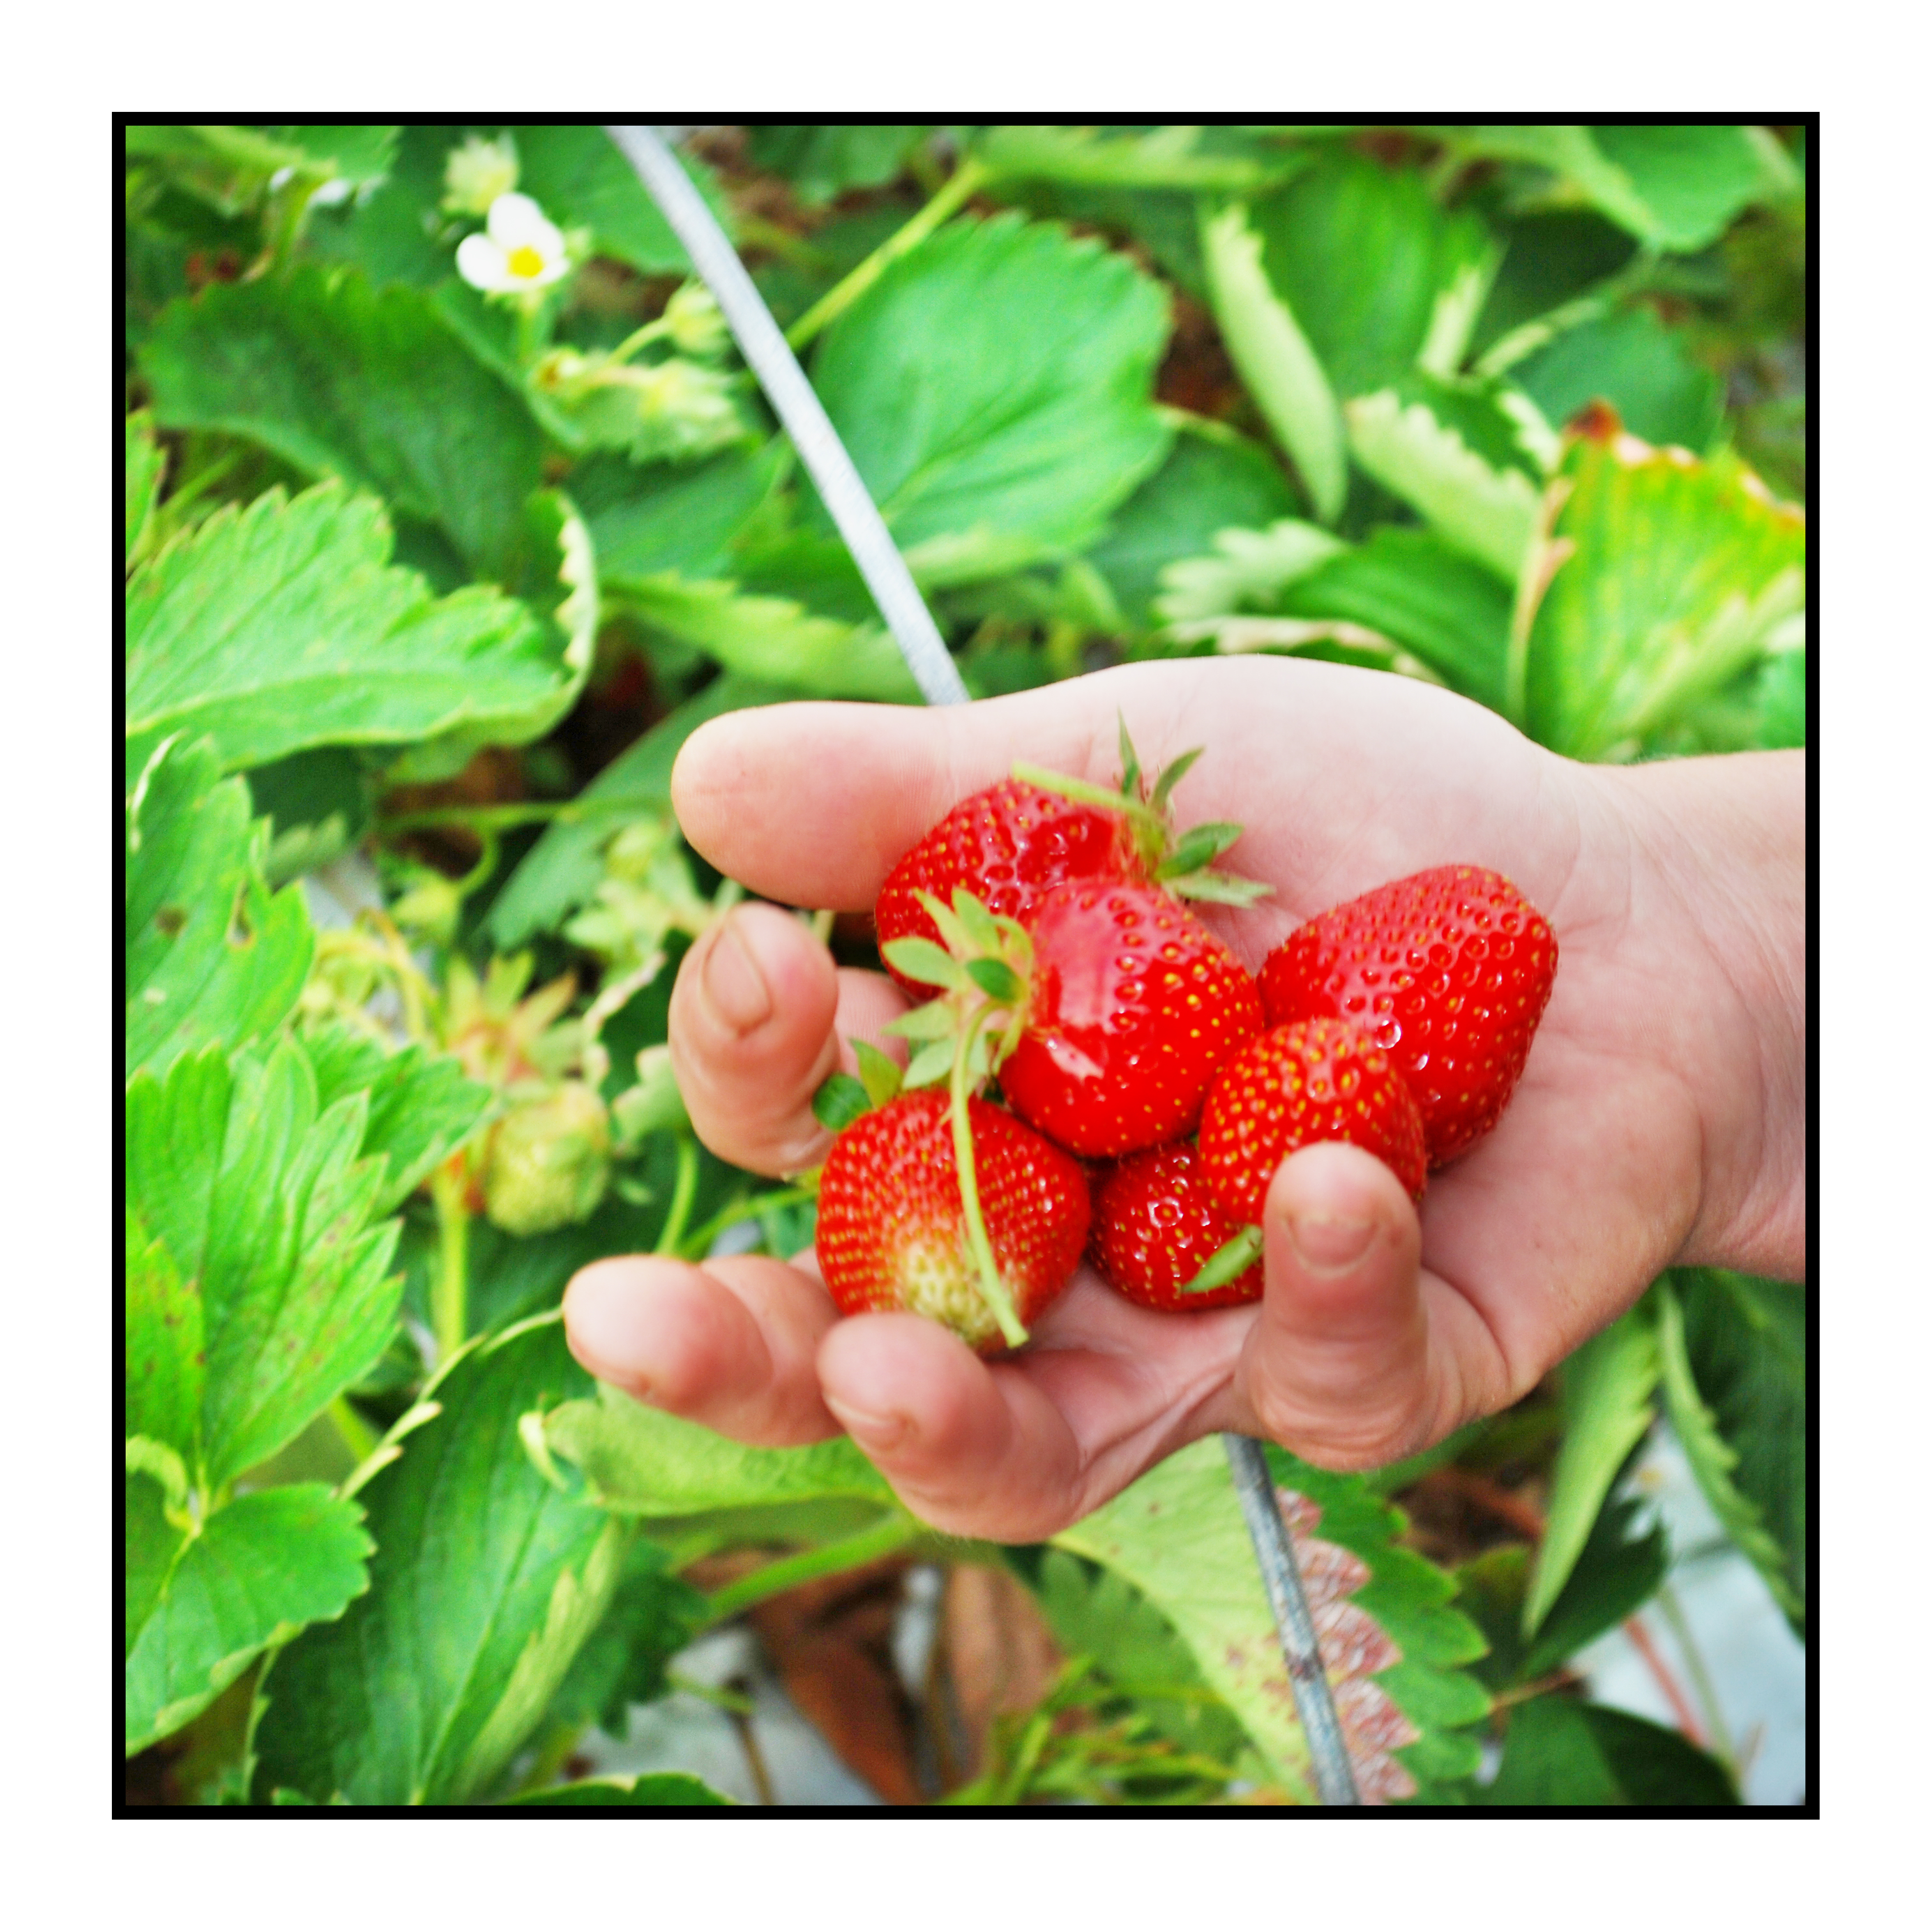 cueillette des fraises plein champs-Pommes bio- locales- arboriculteur- ferme-magasin de producteurs - Gilly sur Isère / Albertville- savoie - terroir